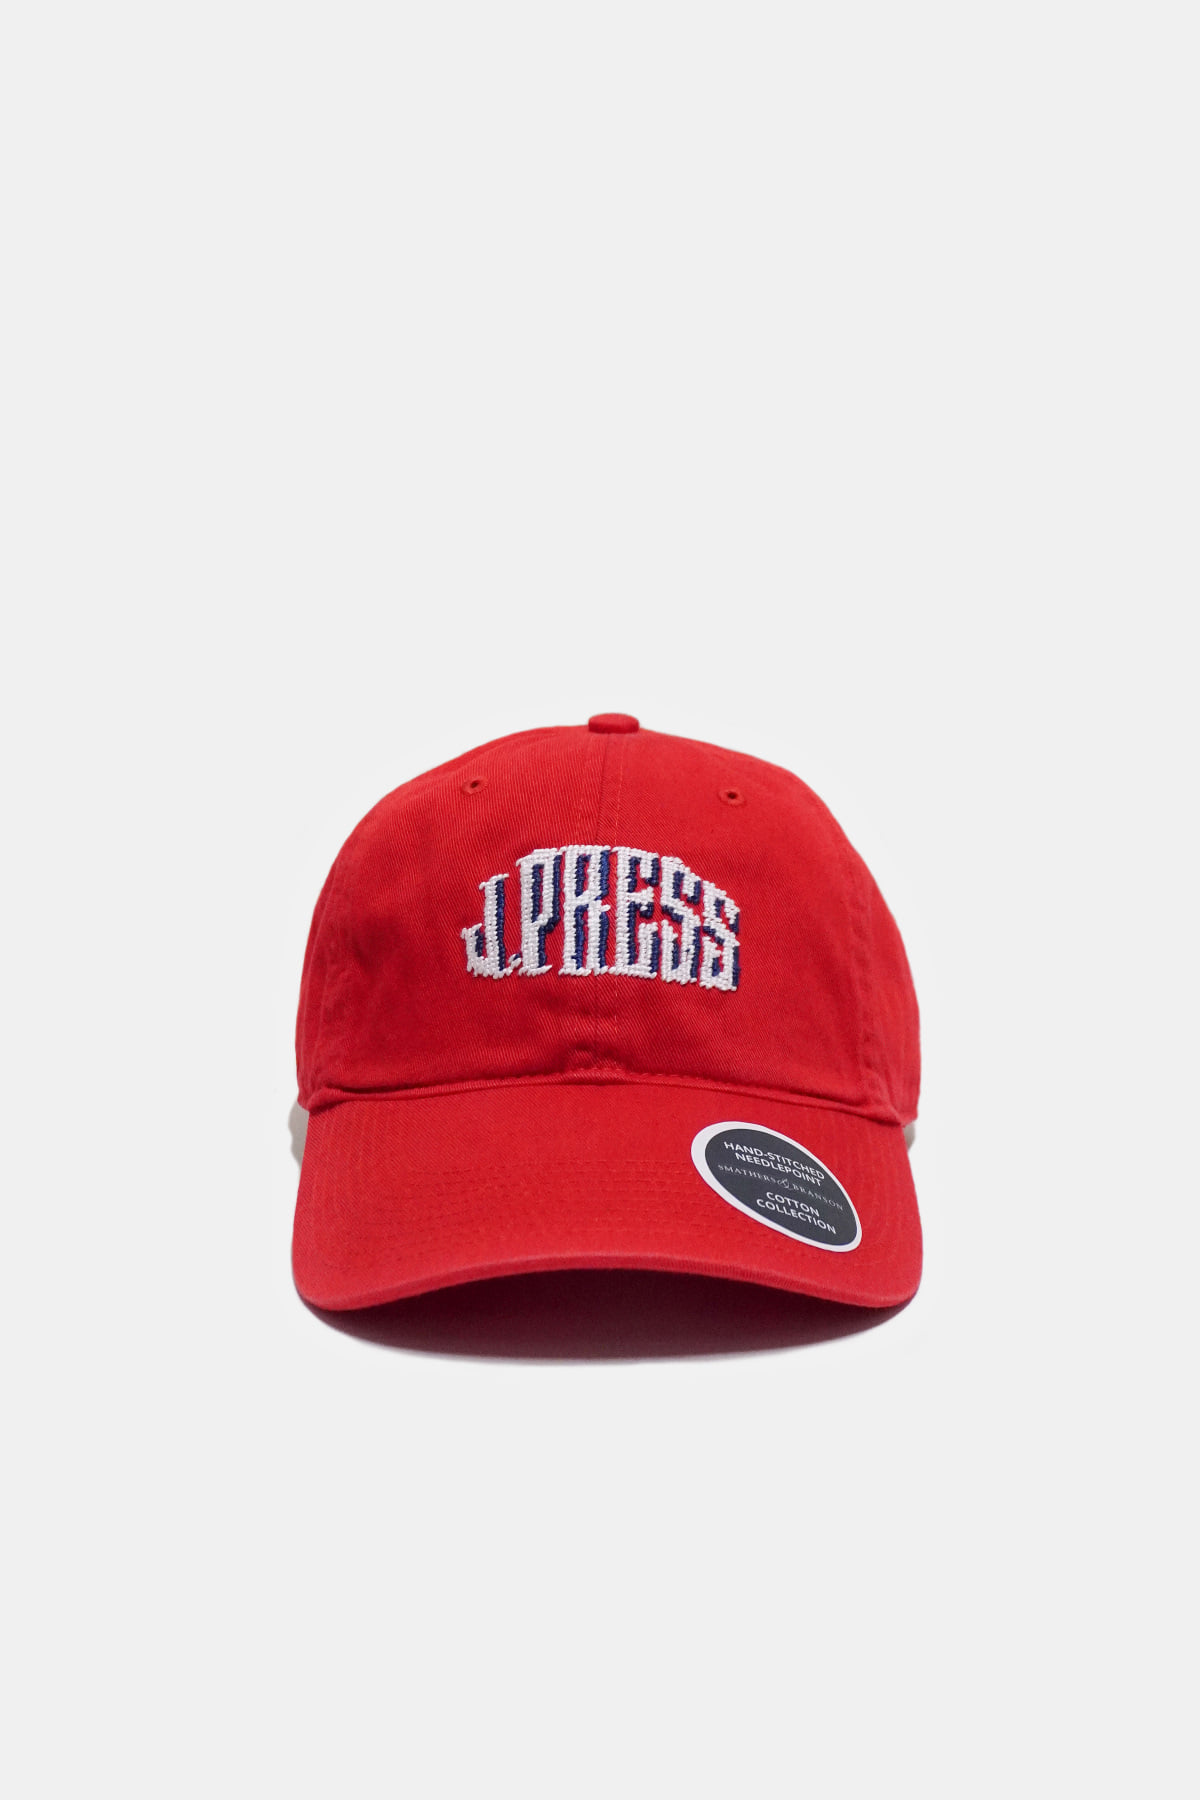 [J.PRESS]  J.PRESS Cap - Red